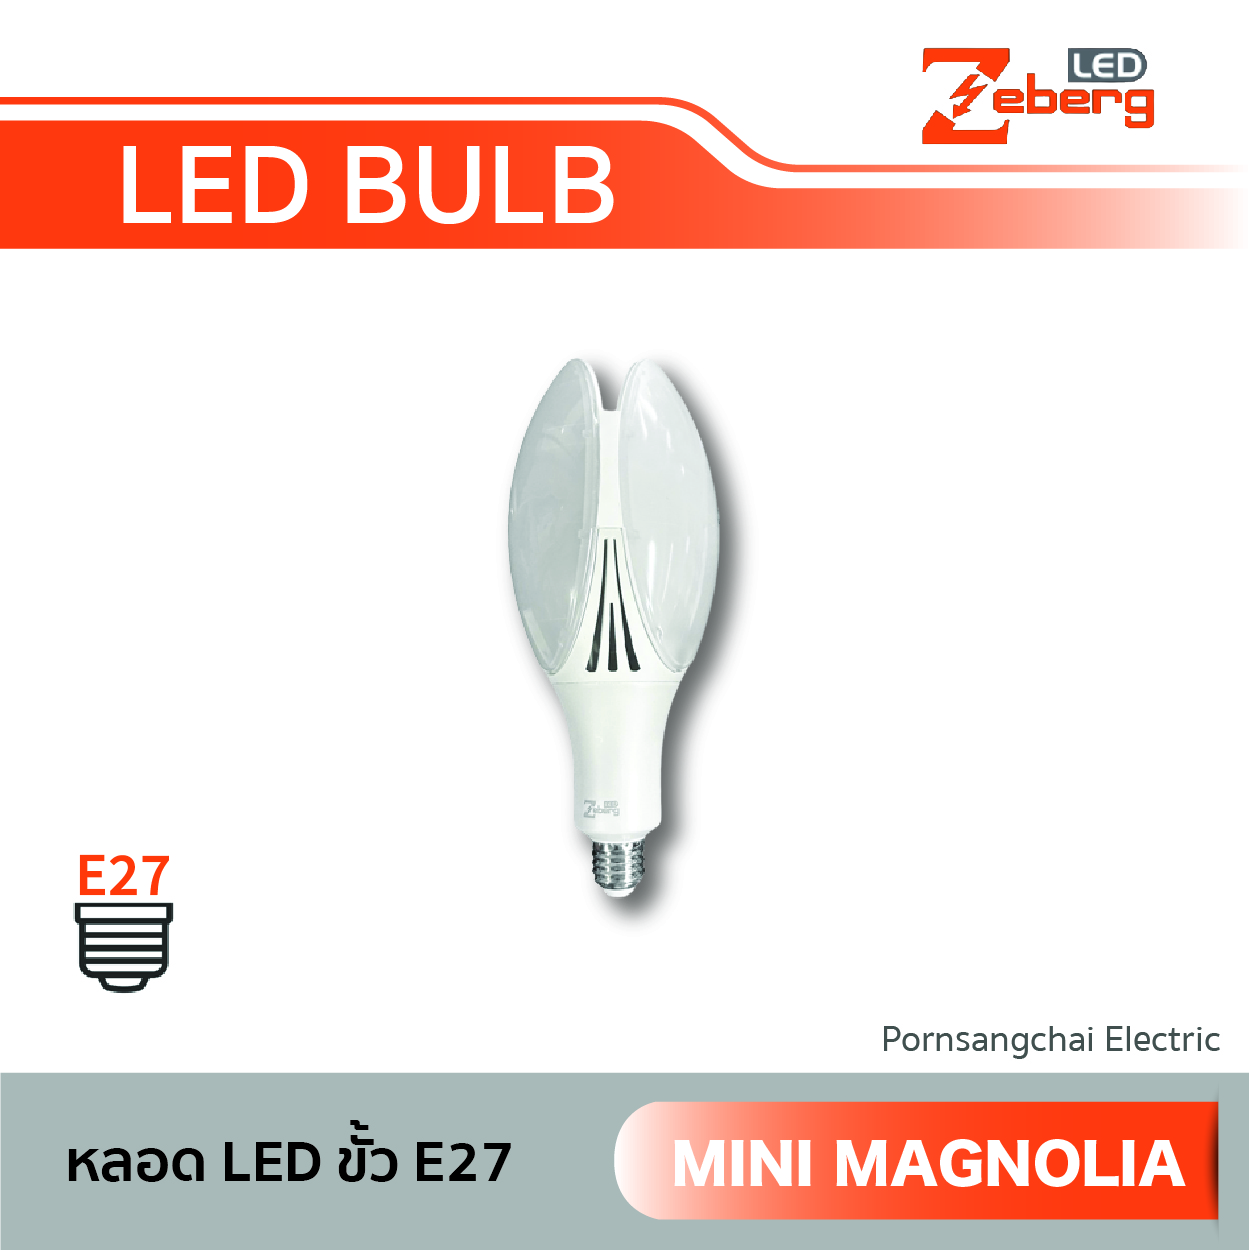 ZEBERG LED Bulb E27 Mini Magnolia